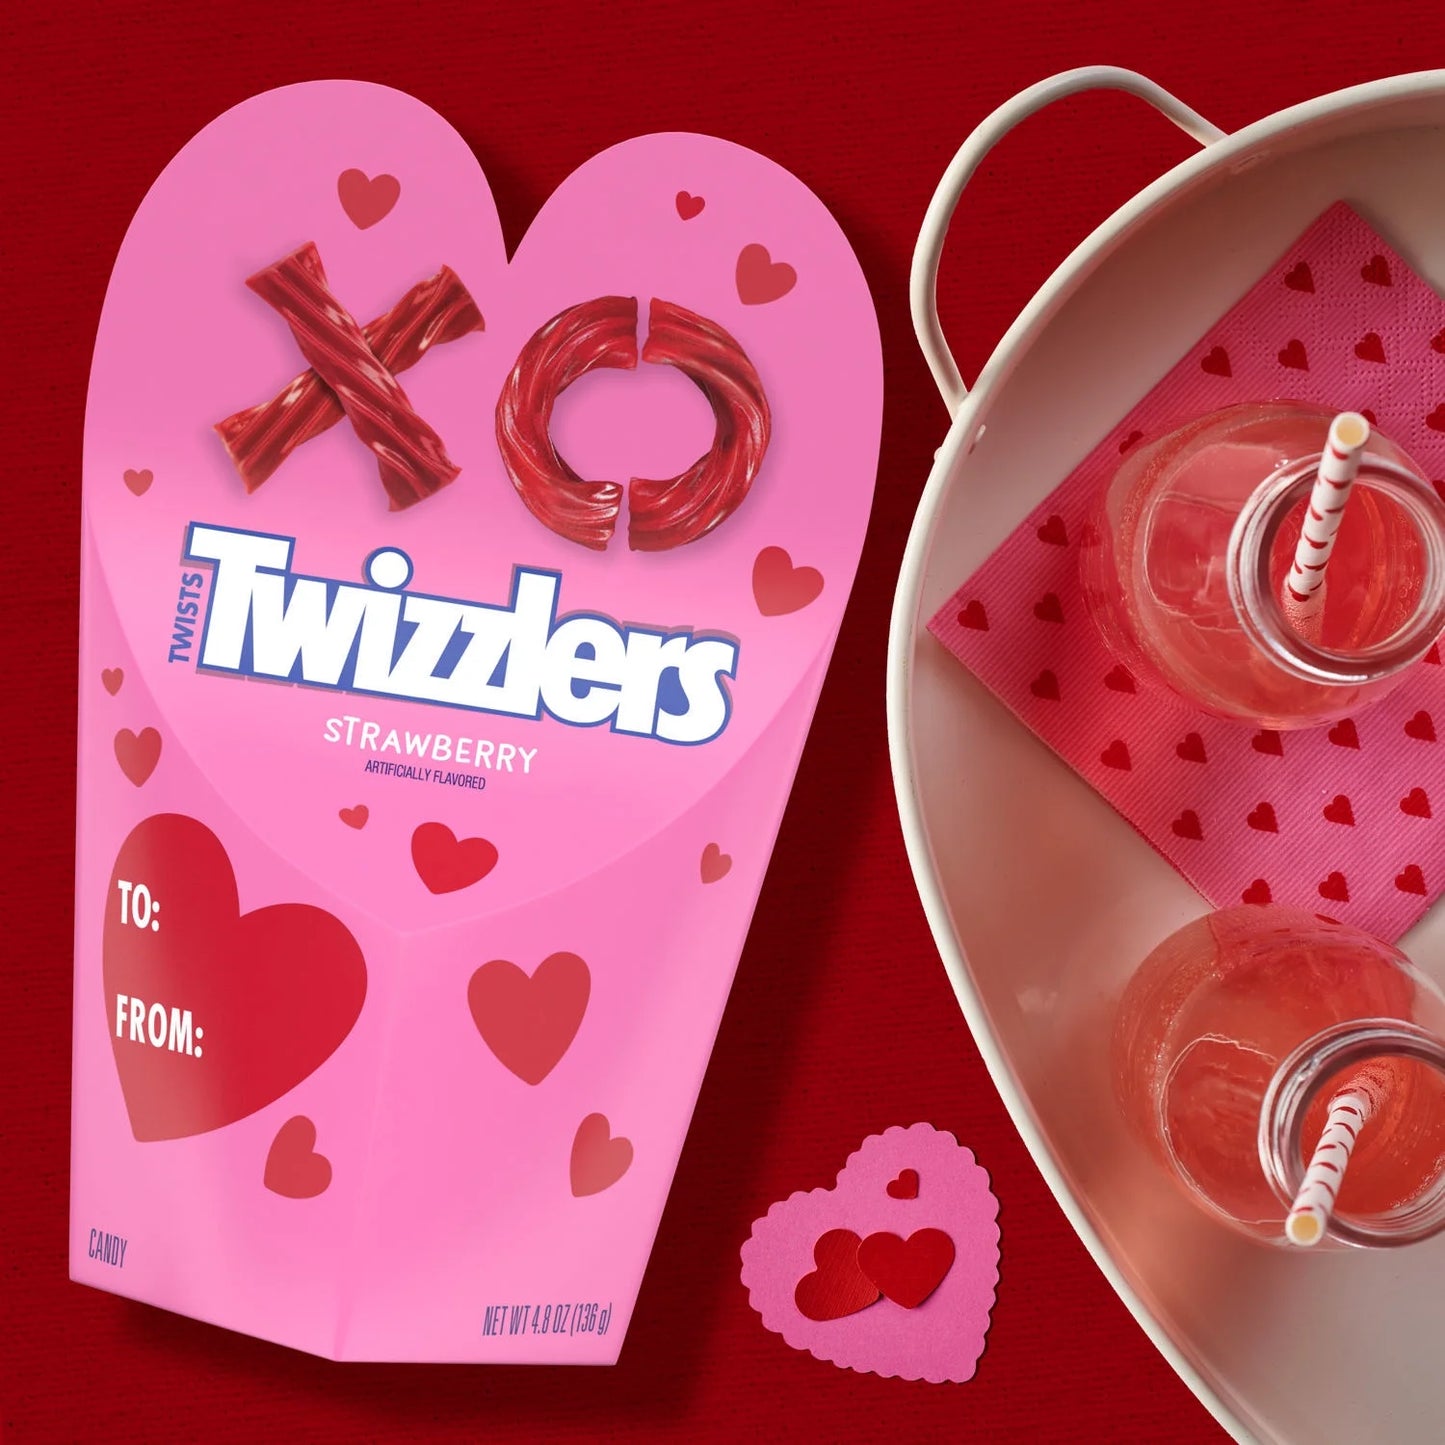 Twists Strawberry Valentine'S Day Candy, Gift Box 4.8 Oz